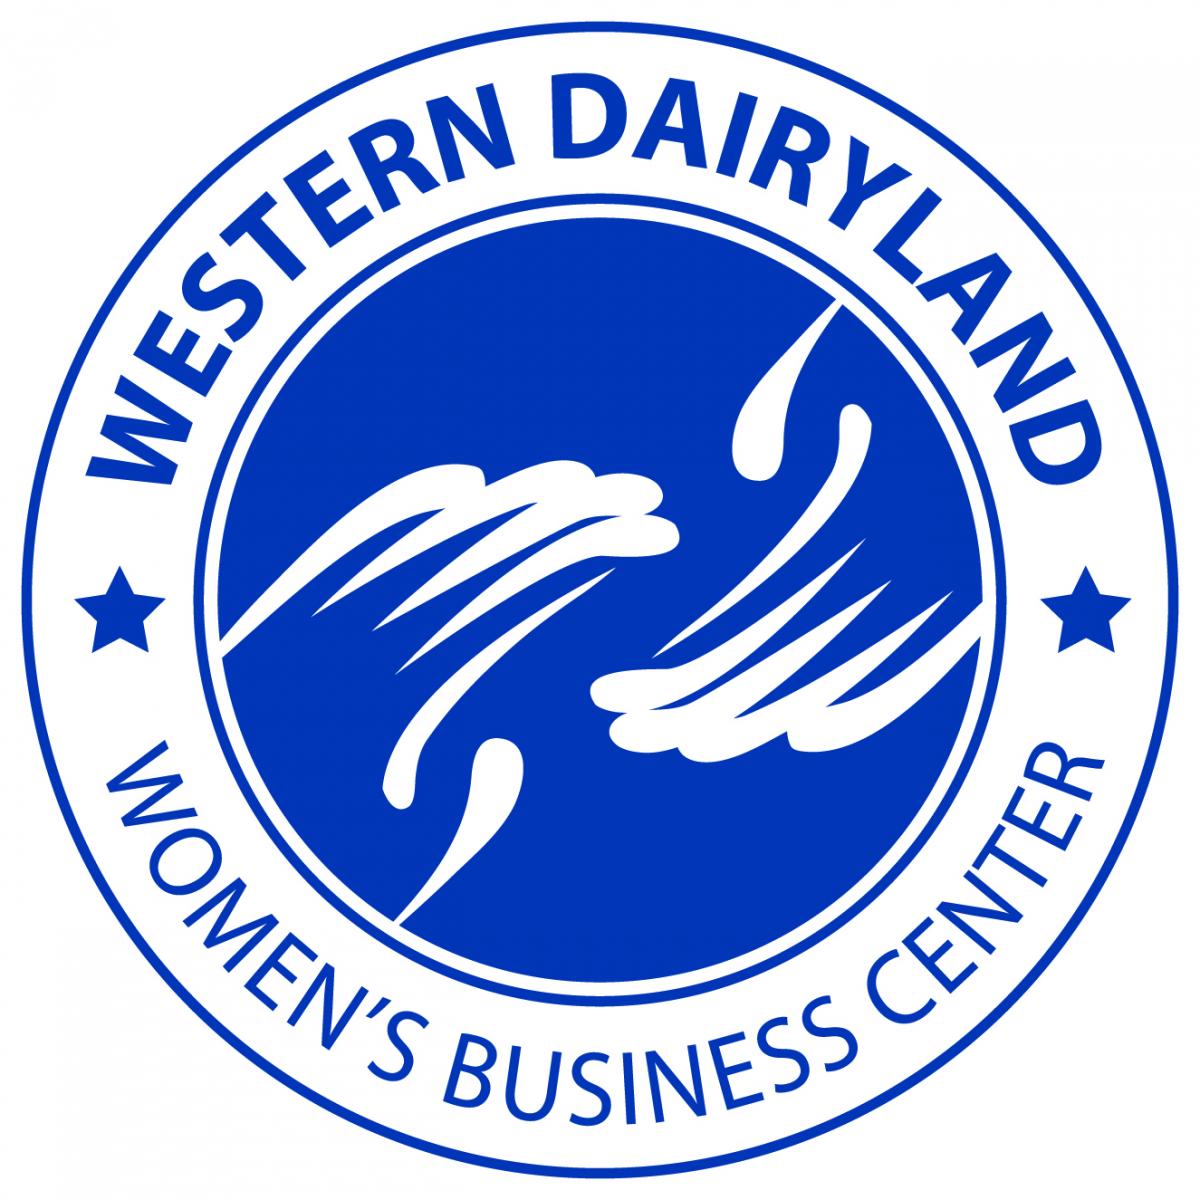 Main Logo for Women's Business Center 